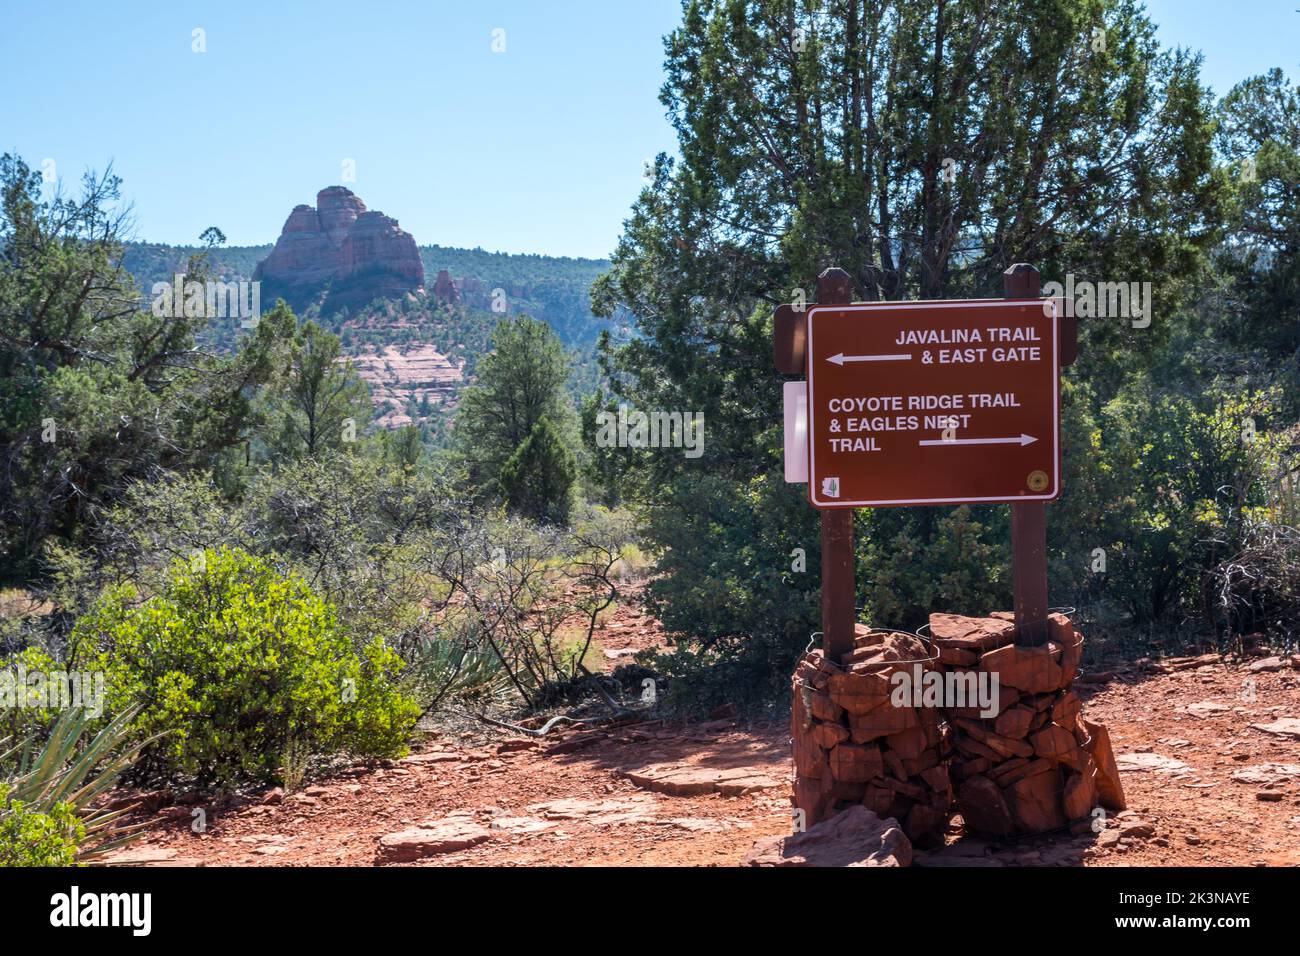 A description board for the trails in Sedona, Arizona Stock Photo